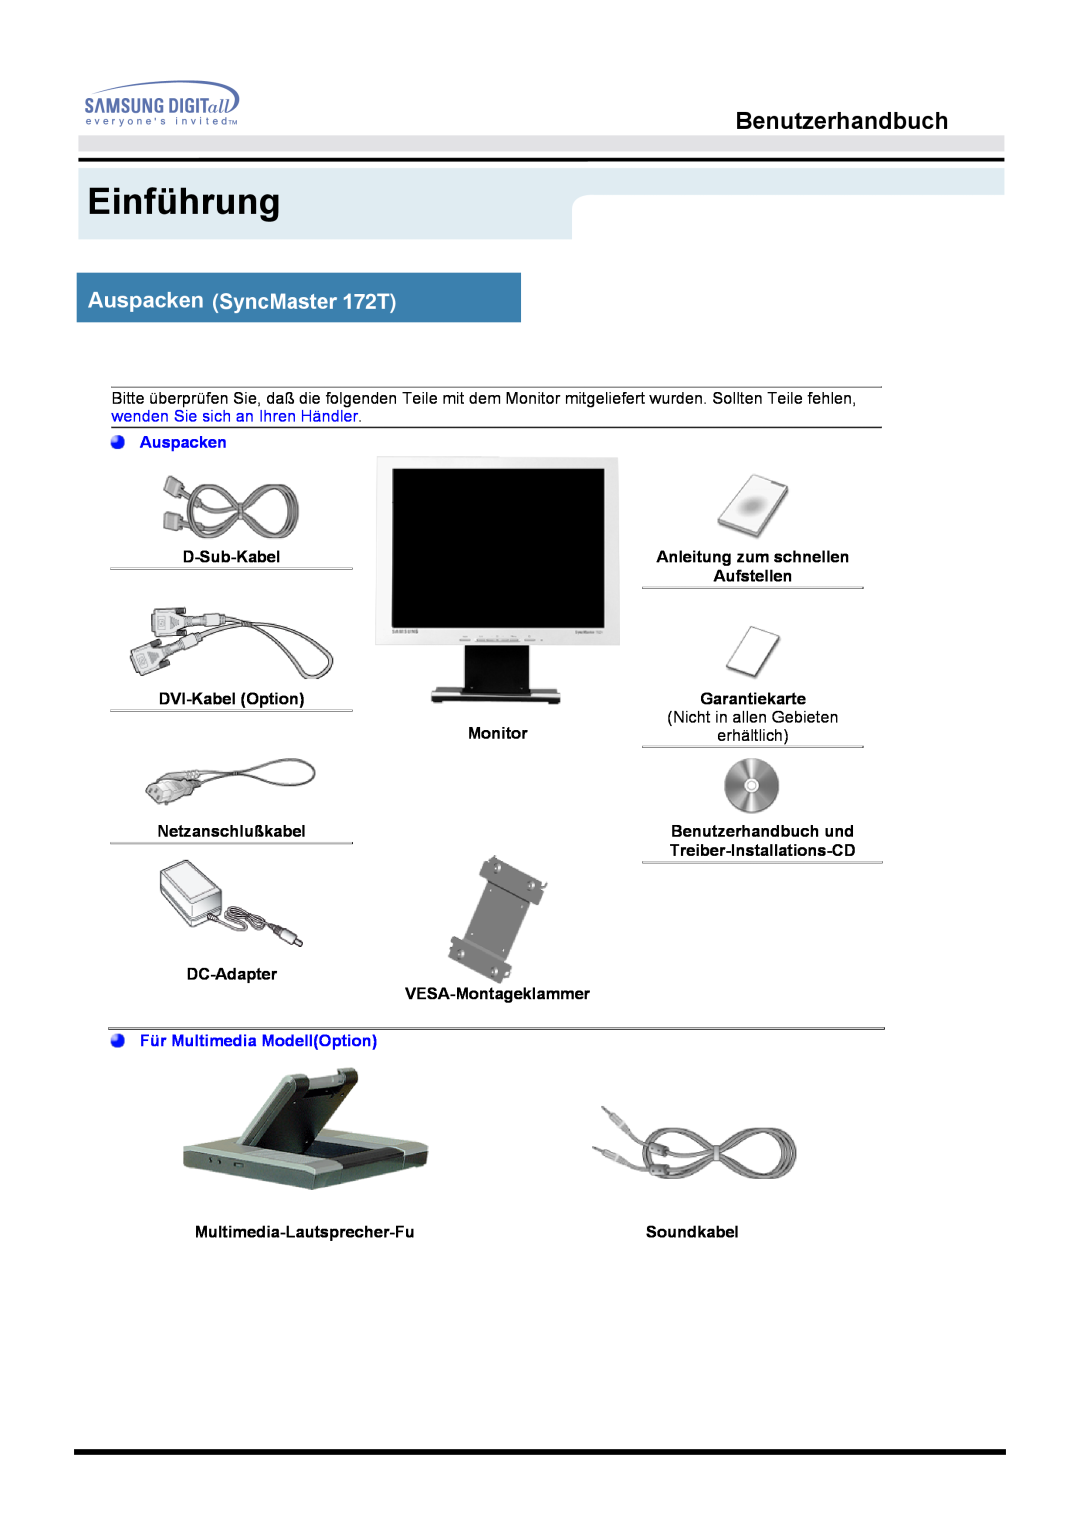 Samsung MO17ESZSZ/EDC, MO17PSZS/EDC Einführung, Benutzerhandbuch, Auspacken SyncMaster 172T, Für Multimedia ModellOption 